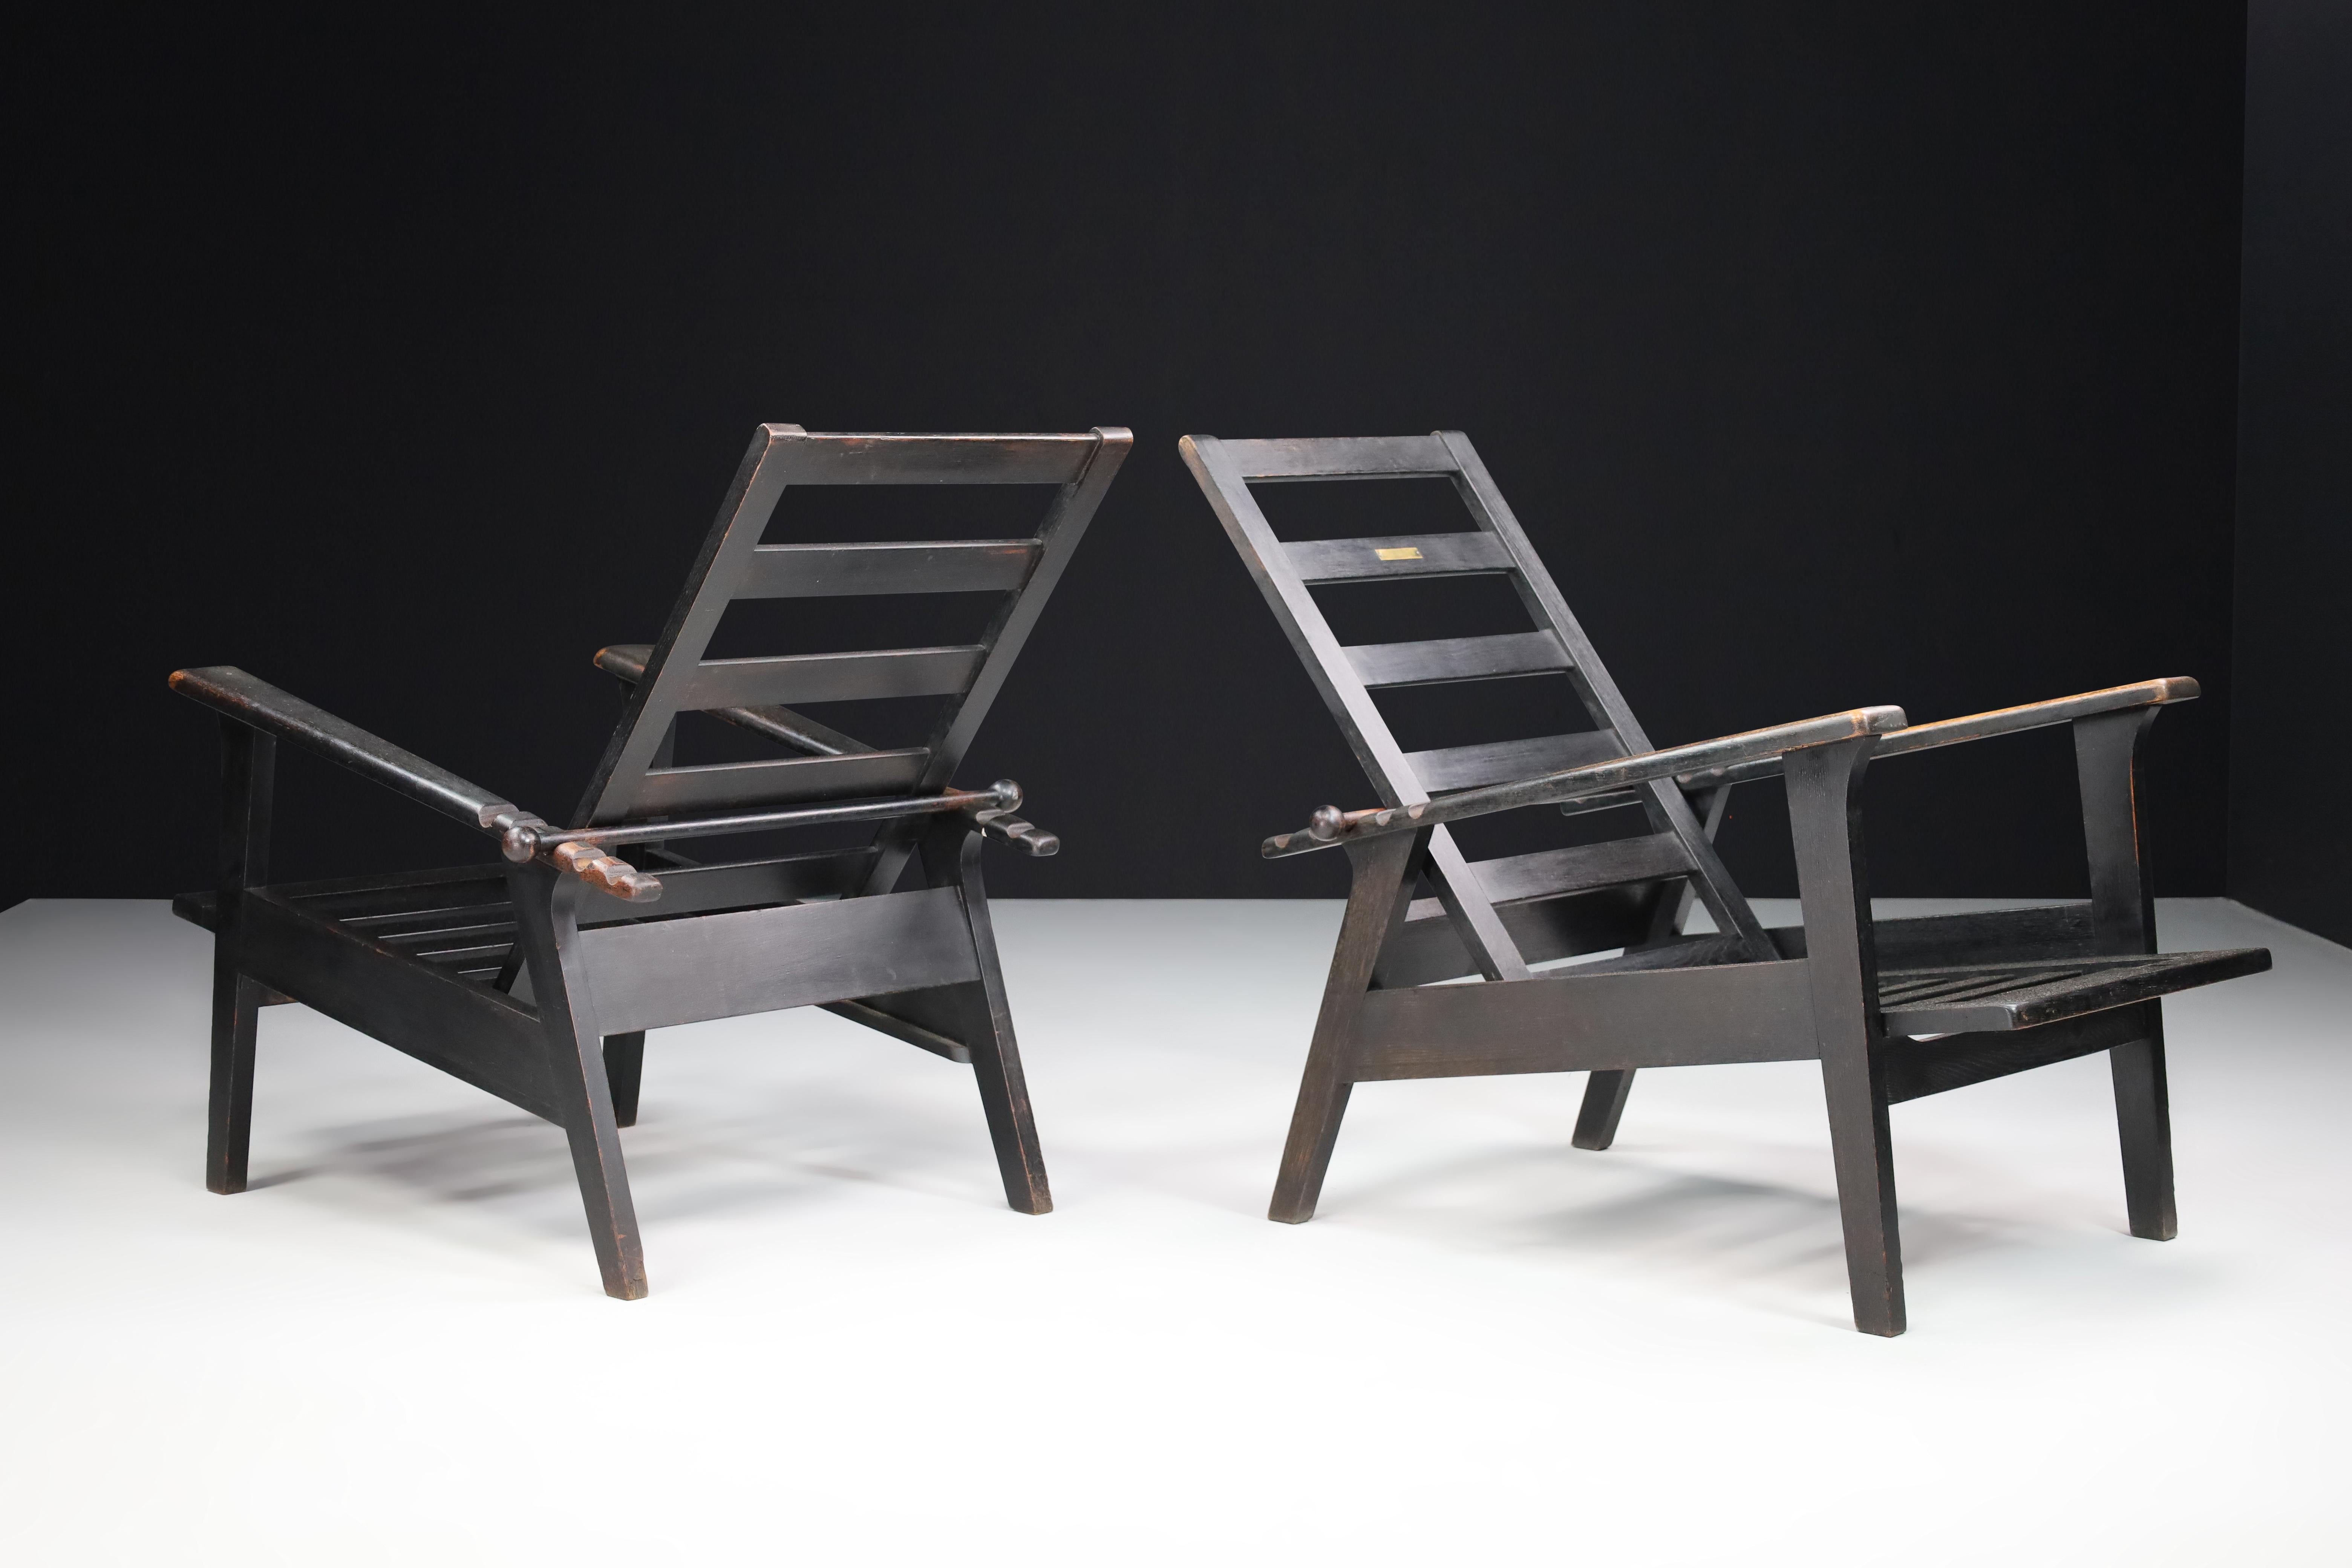 Antonin Heytum verstellbare Sessel aus Eiche, Praque 1930s

Zwei originale verstellbare Sessel aus Eichenholz, entworfen von Antonin Heytum in den 1930er Jahren. Diese Sessel sind in einem ausgezeichneten Originalzustand mit einer fantastischen